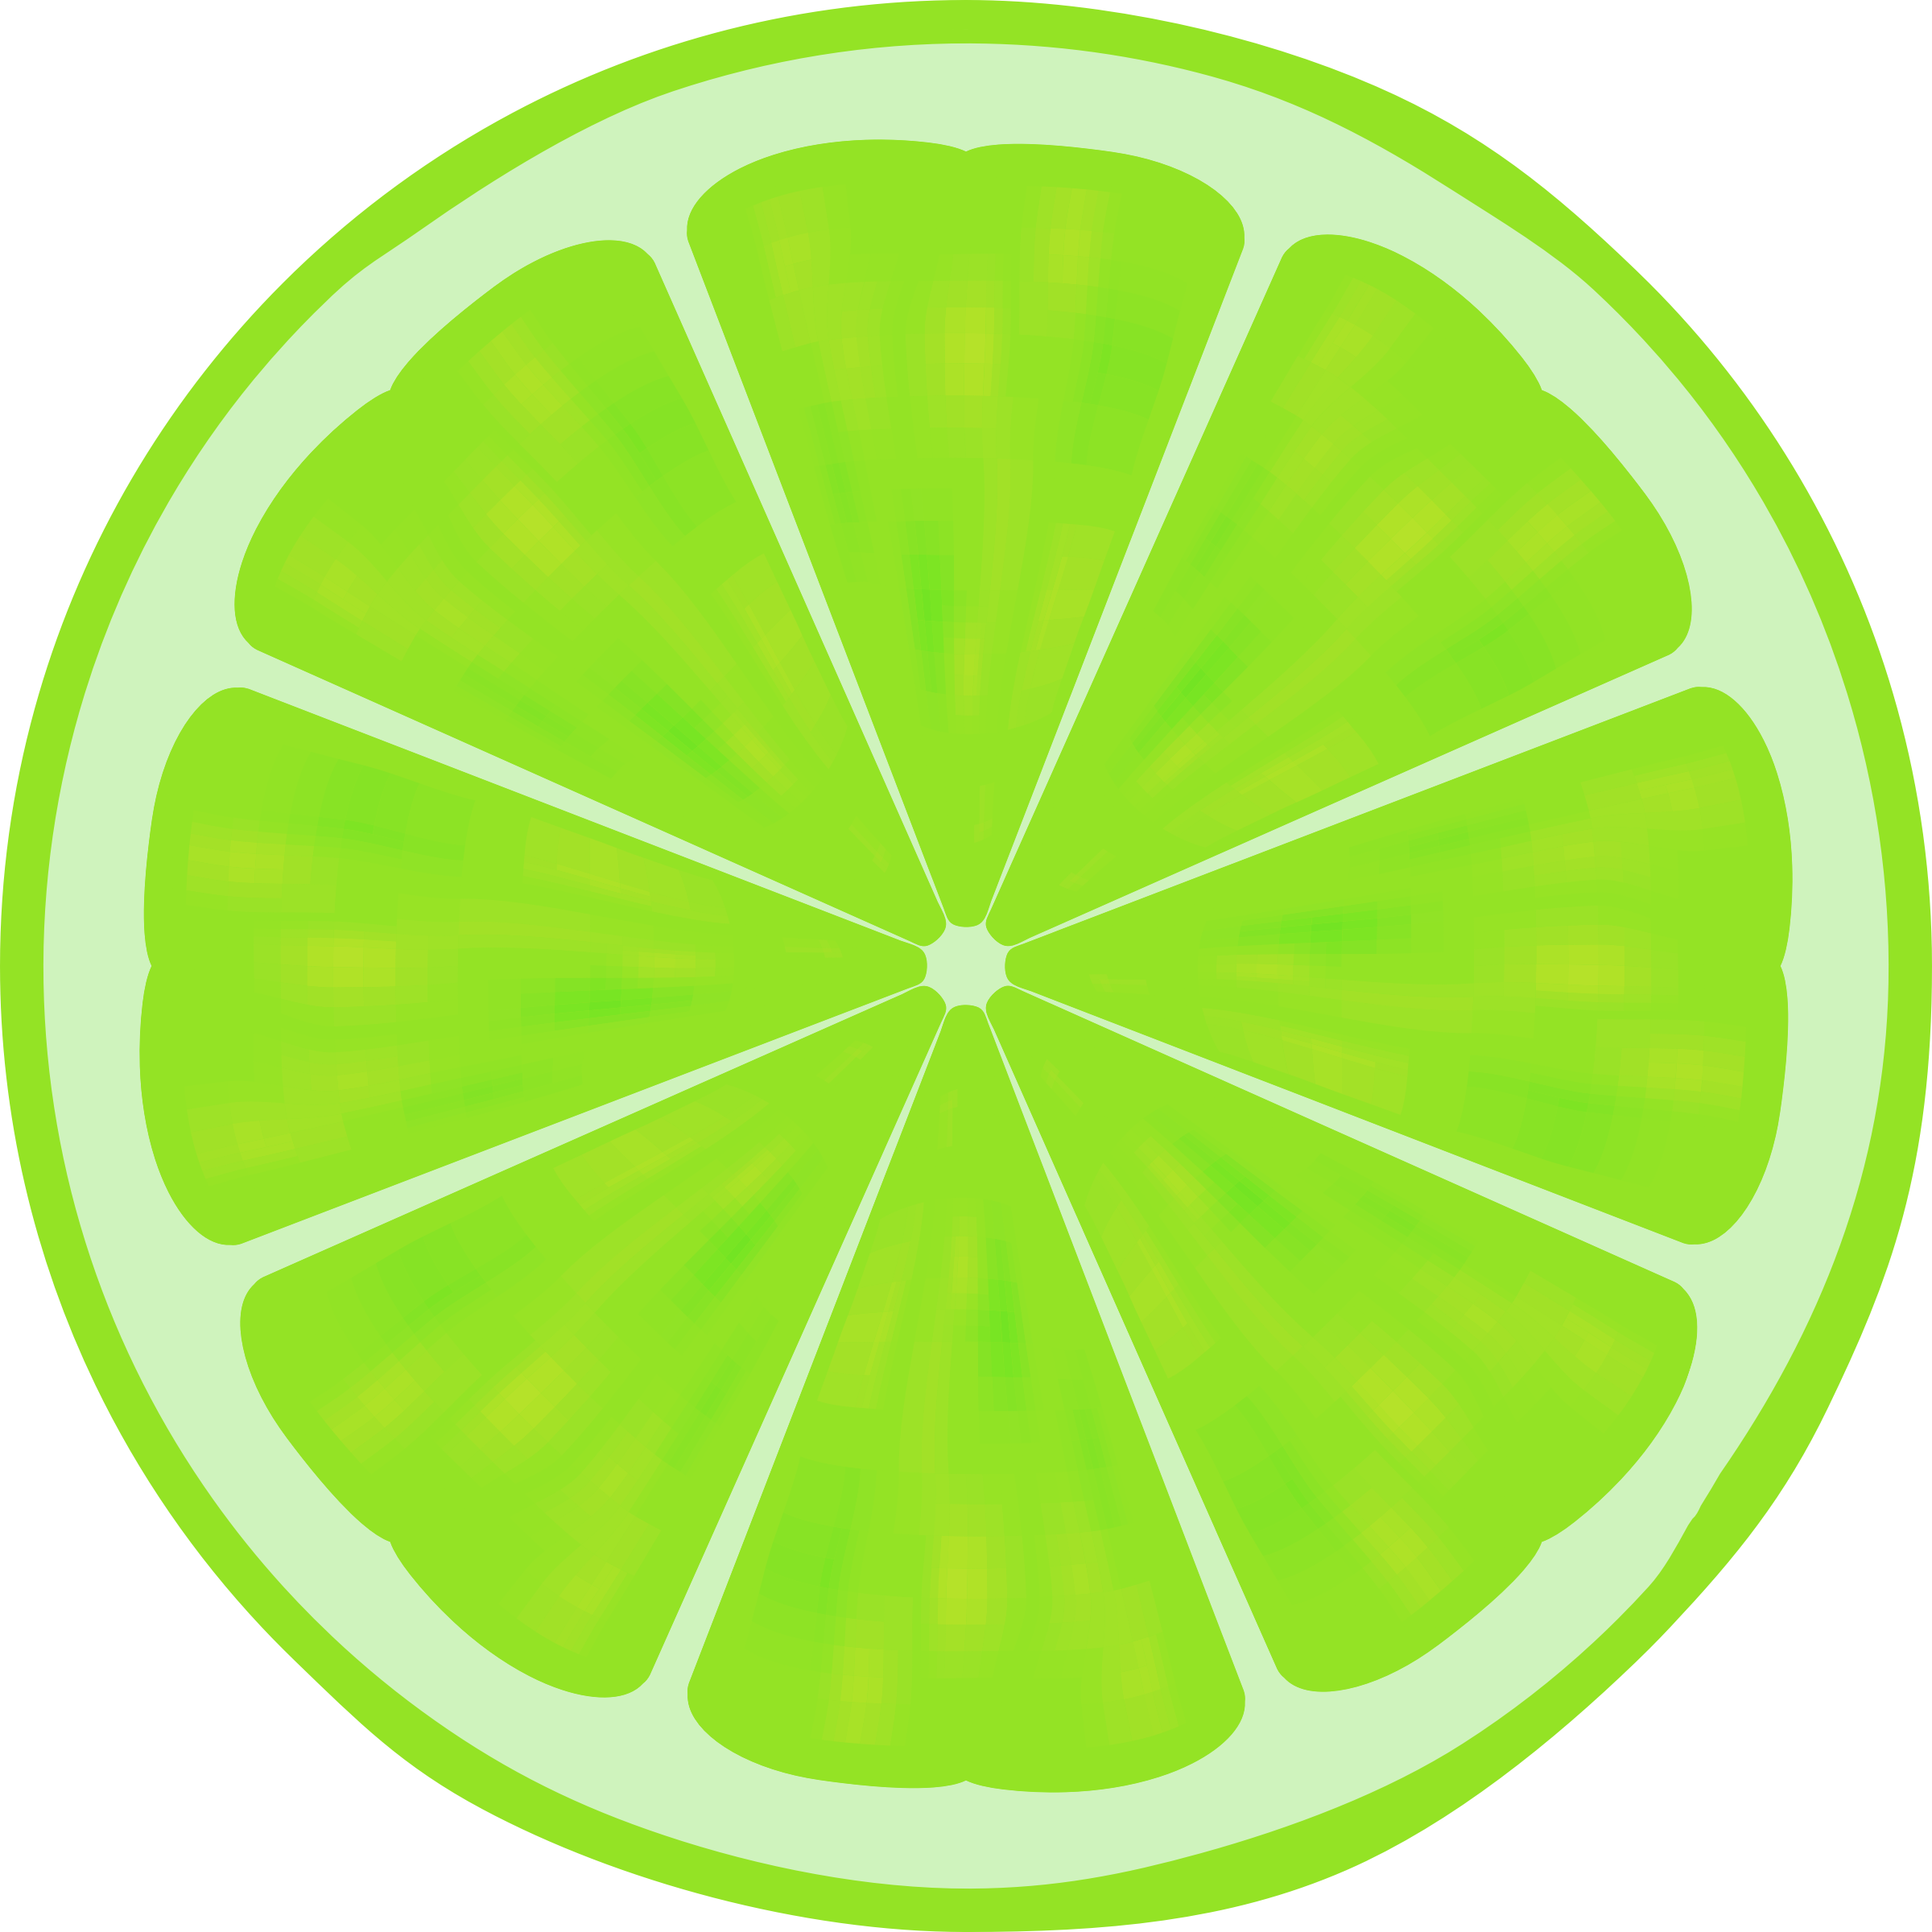 Limewire Lemon Fruit Drawing - Lime Slices Clip Art (2400x2400)